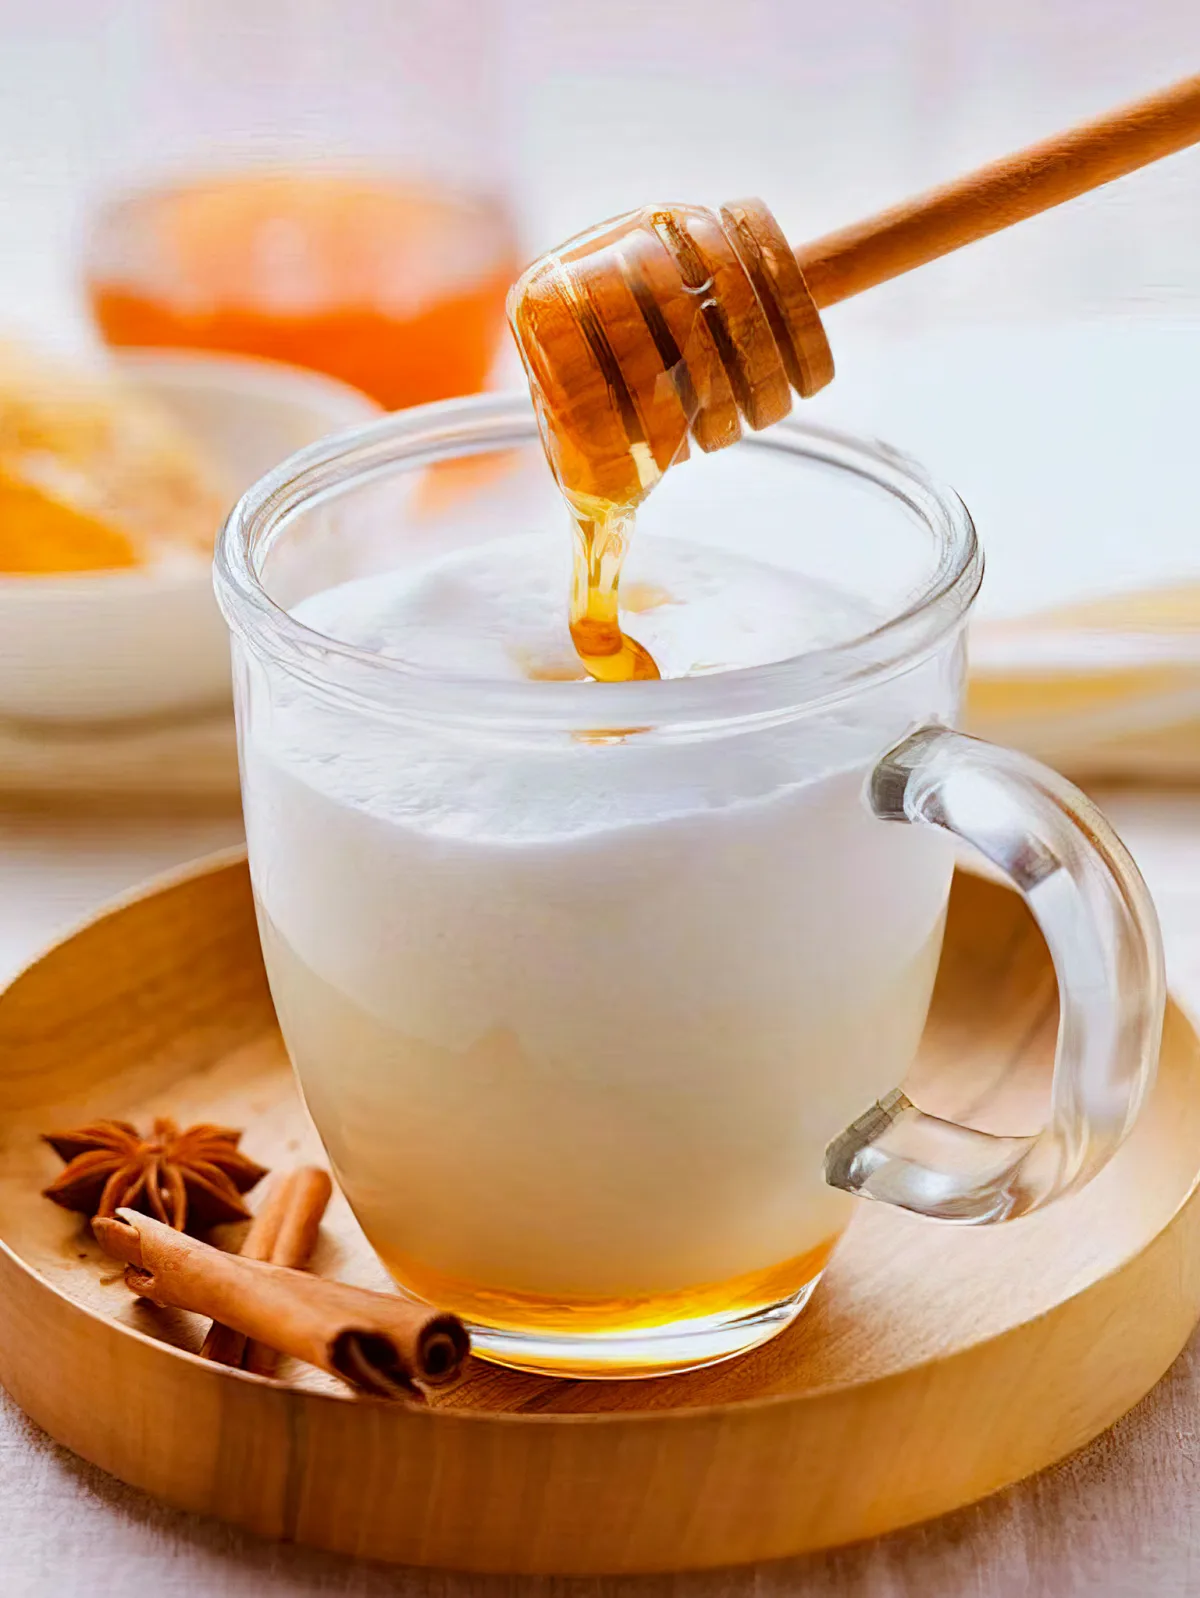 boire du lait chaud au miel pour stimuler son immunite